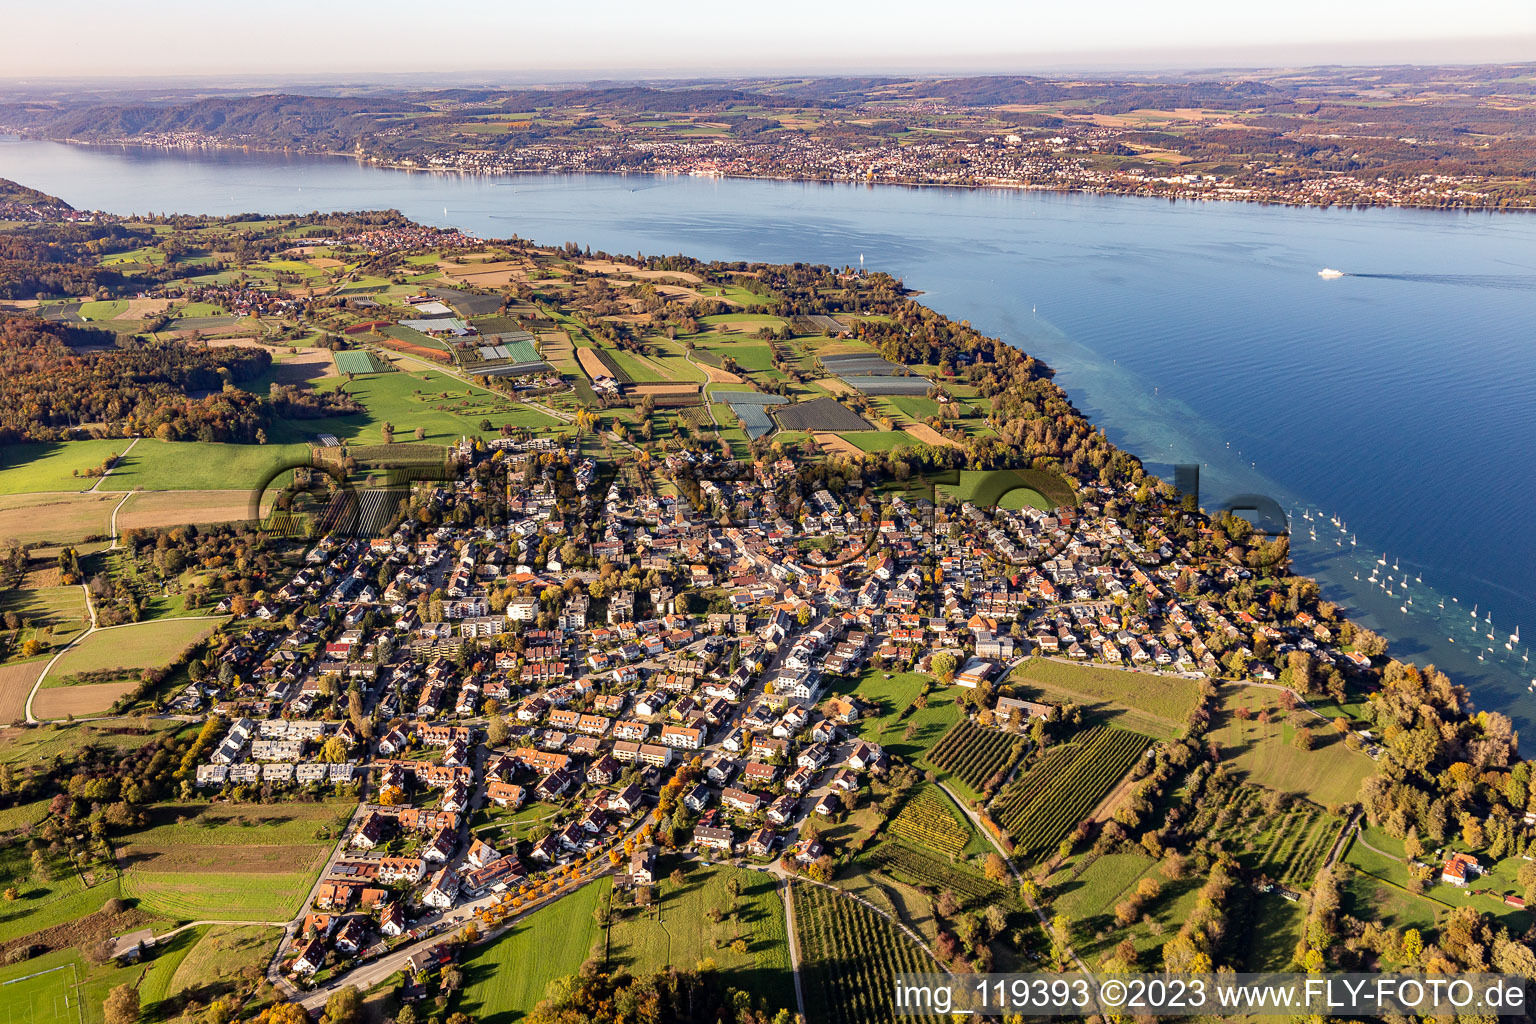 Luftbild von Uferbereich des Bodensee mit Yachthafen im Ortsteil Litzelstetten in Konstanz im Bundesland Baden-Württemberg, Deutschland